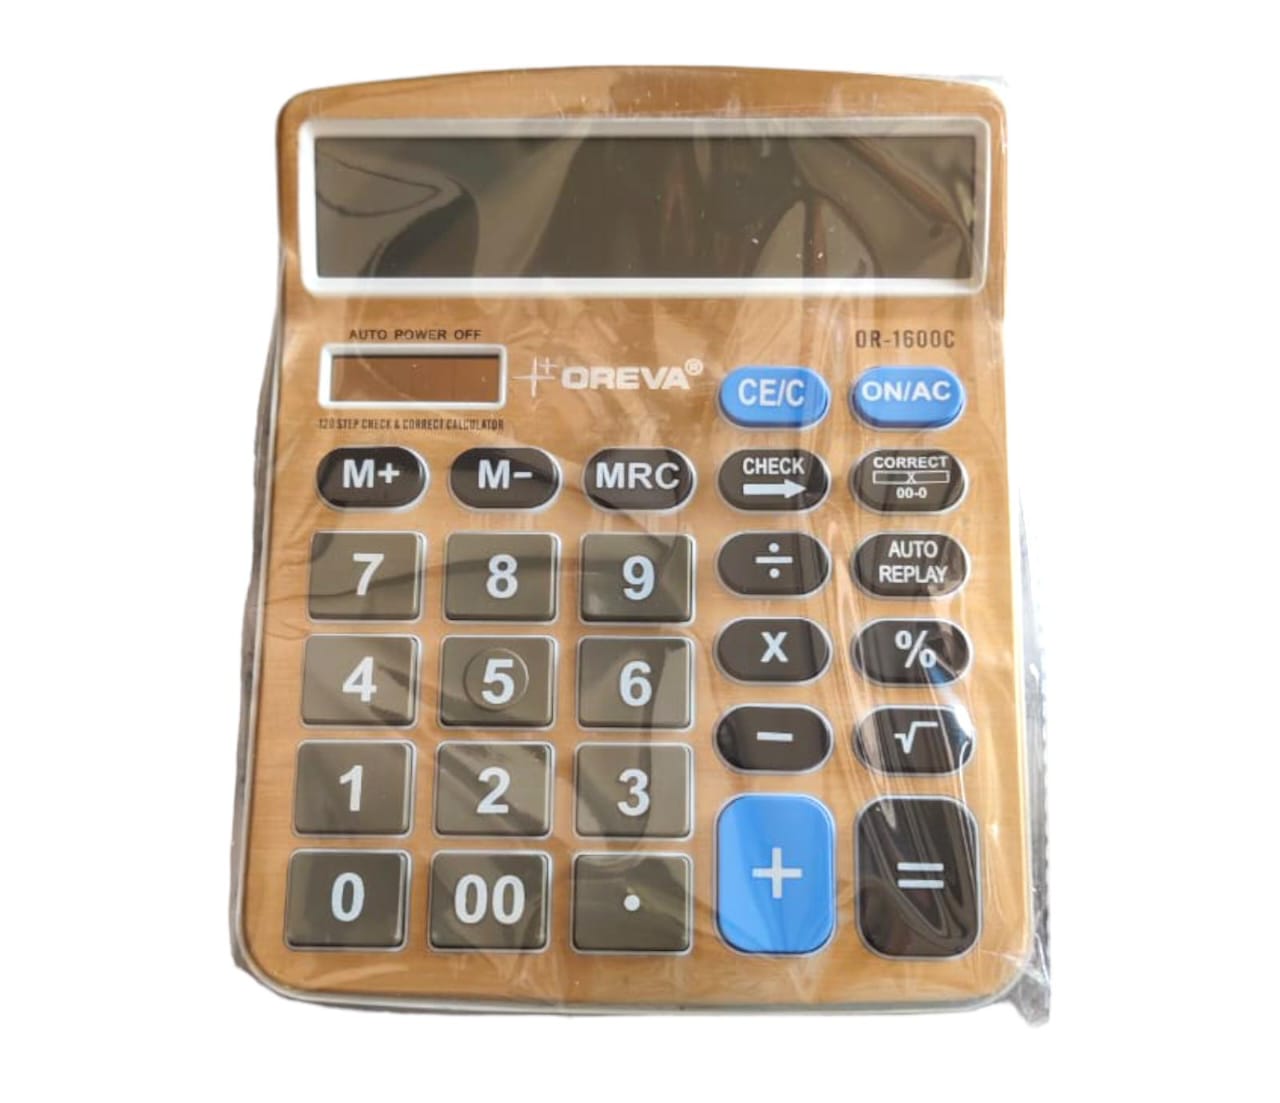 Oreva calculator 